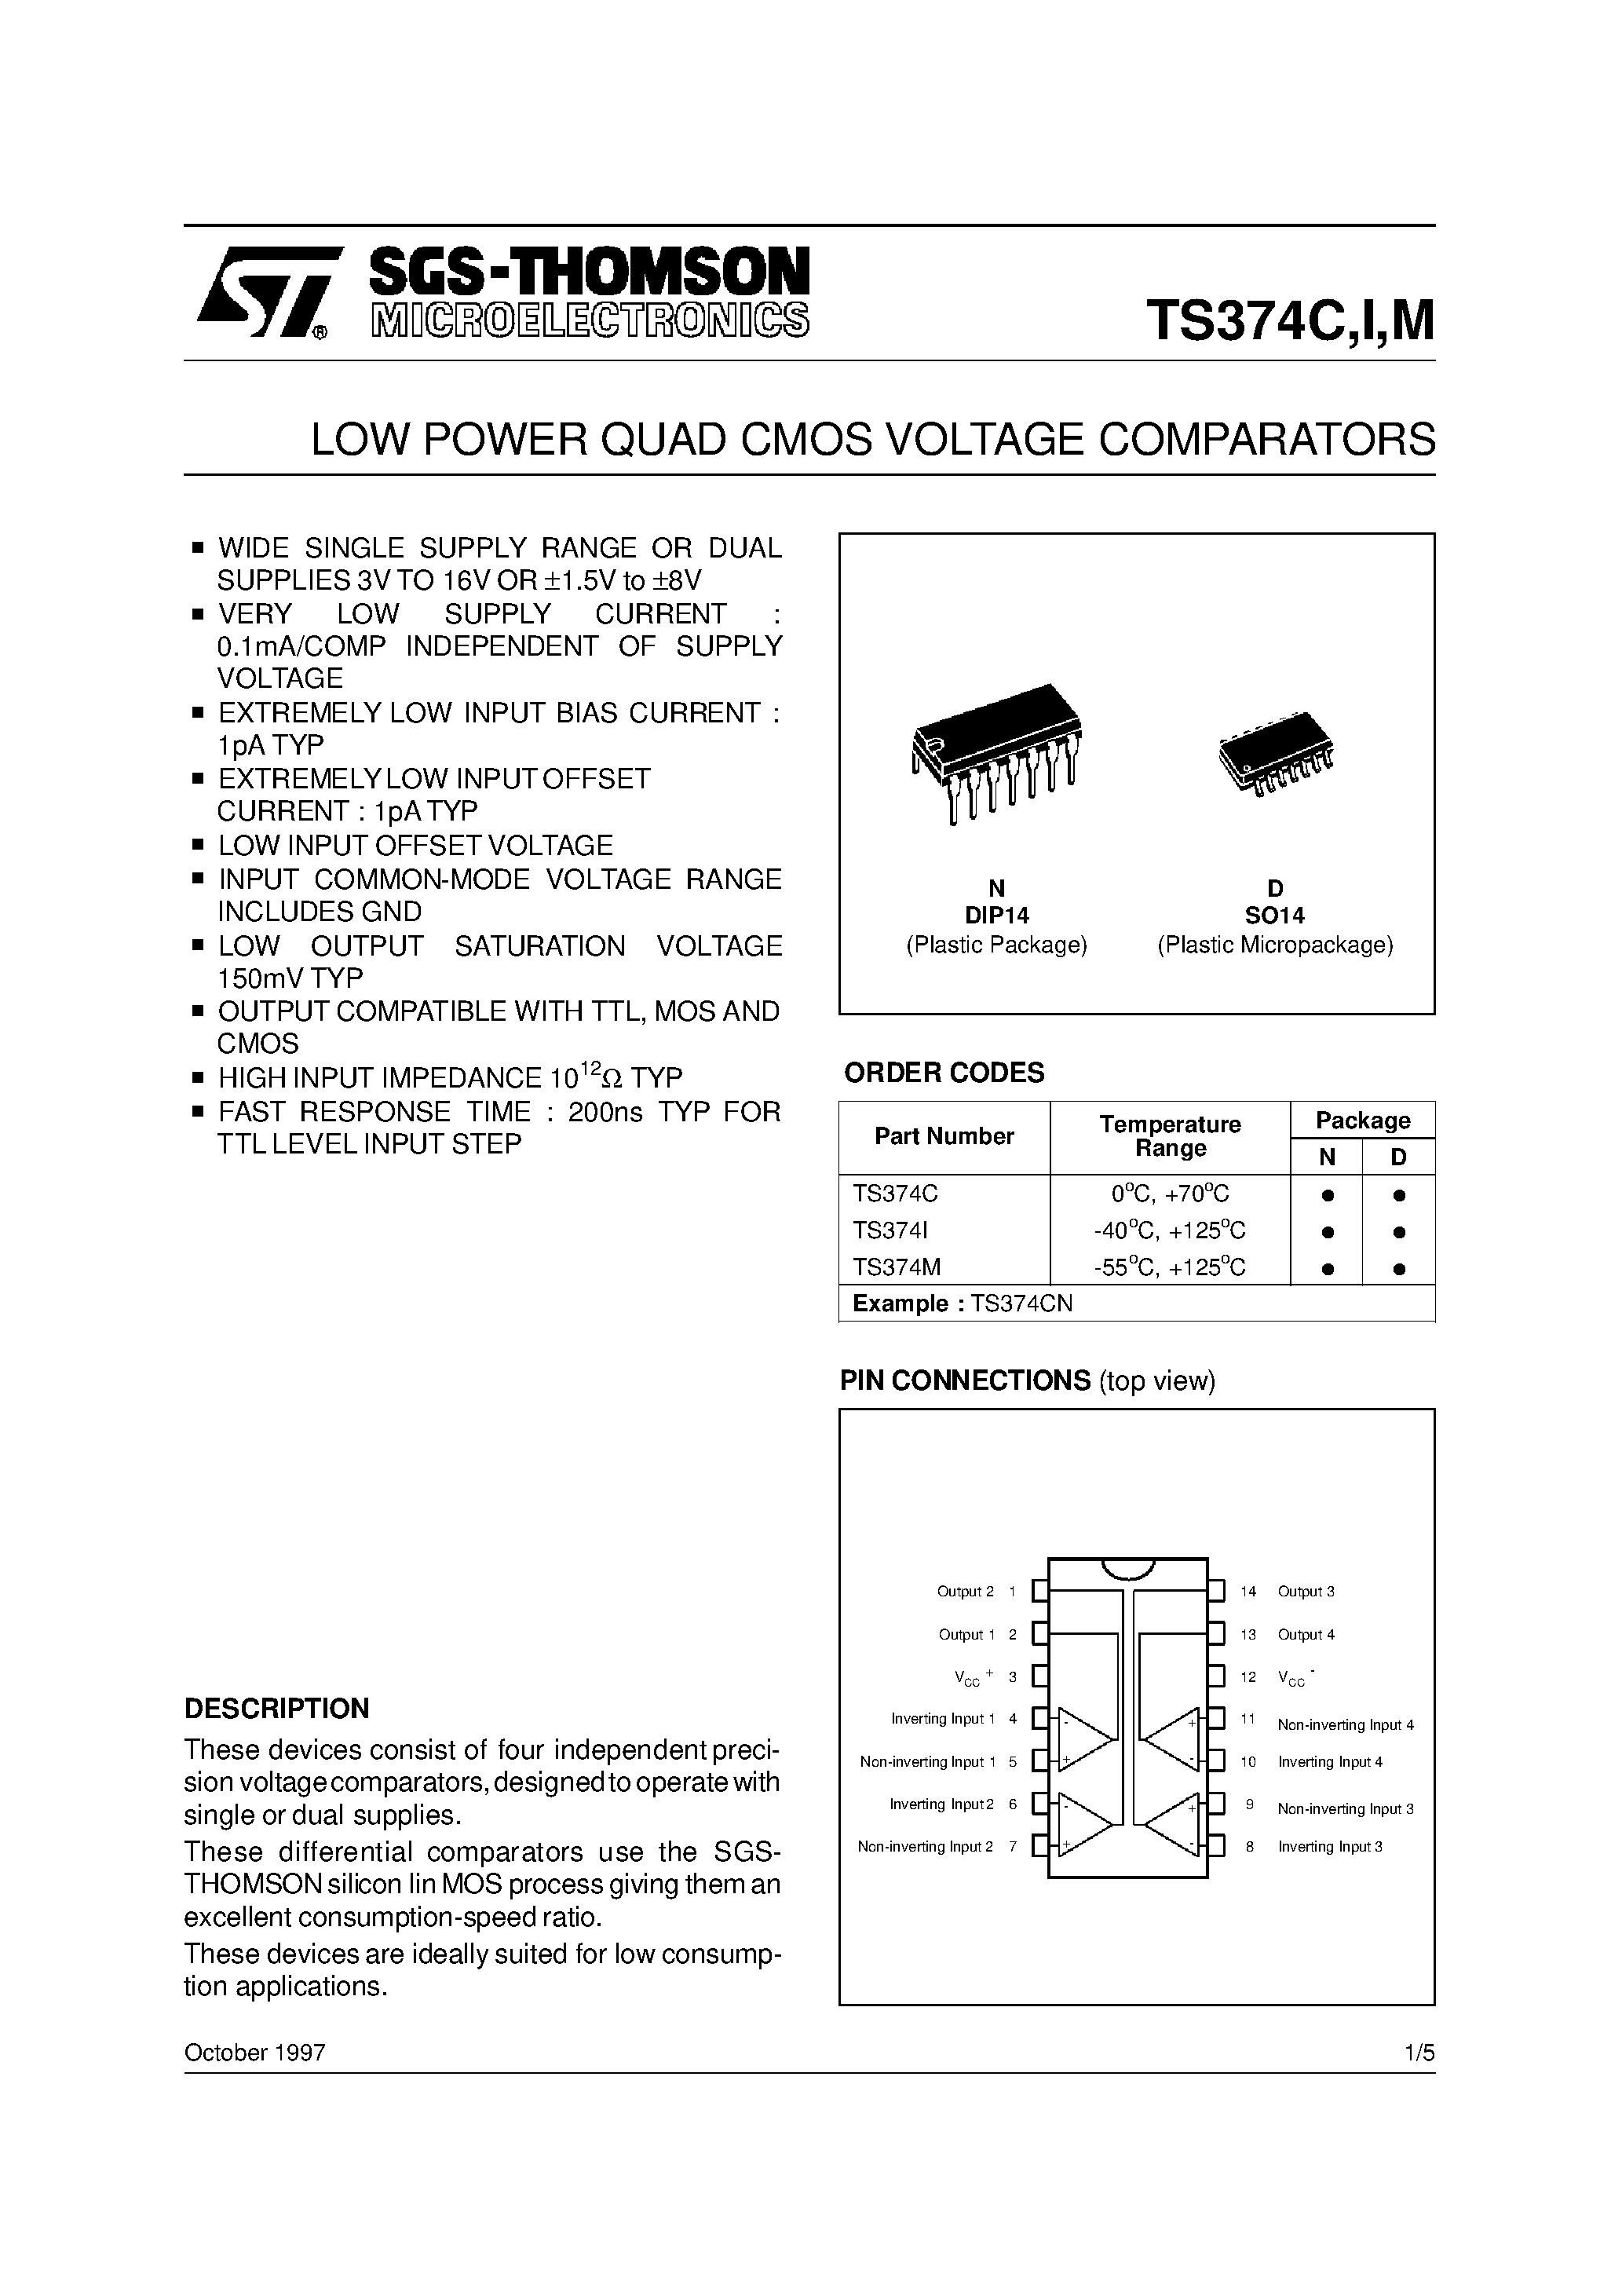 Даташит TS374I - LOW POWER QUAD CMOS VOLTAGE COMPARATORS страница 1